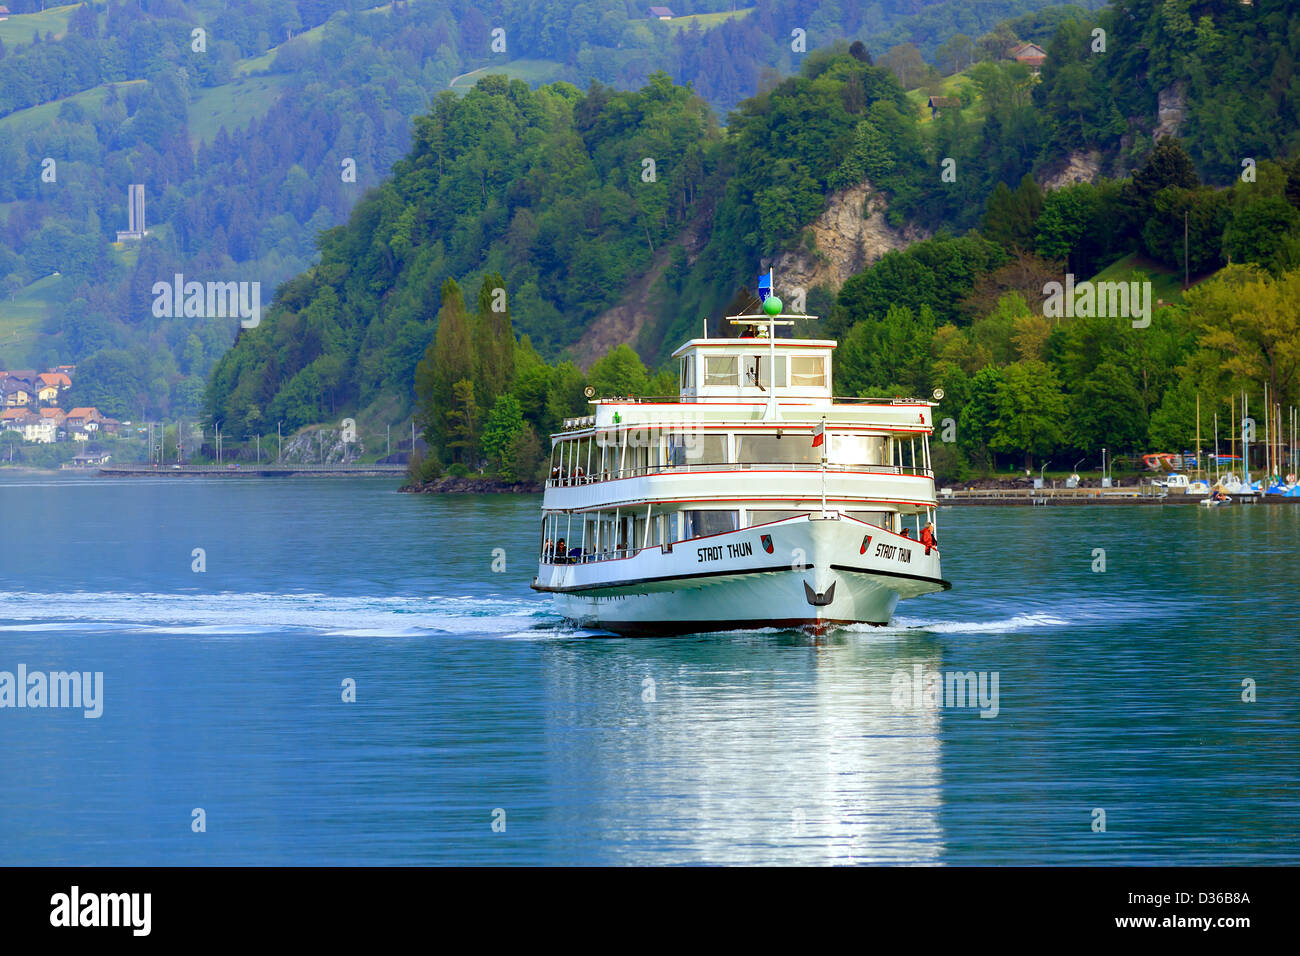 Fähre auf dem Thunersee bei Faulensee, Schweiz Stockfotografie - Alamy